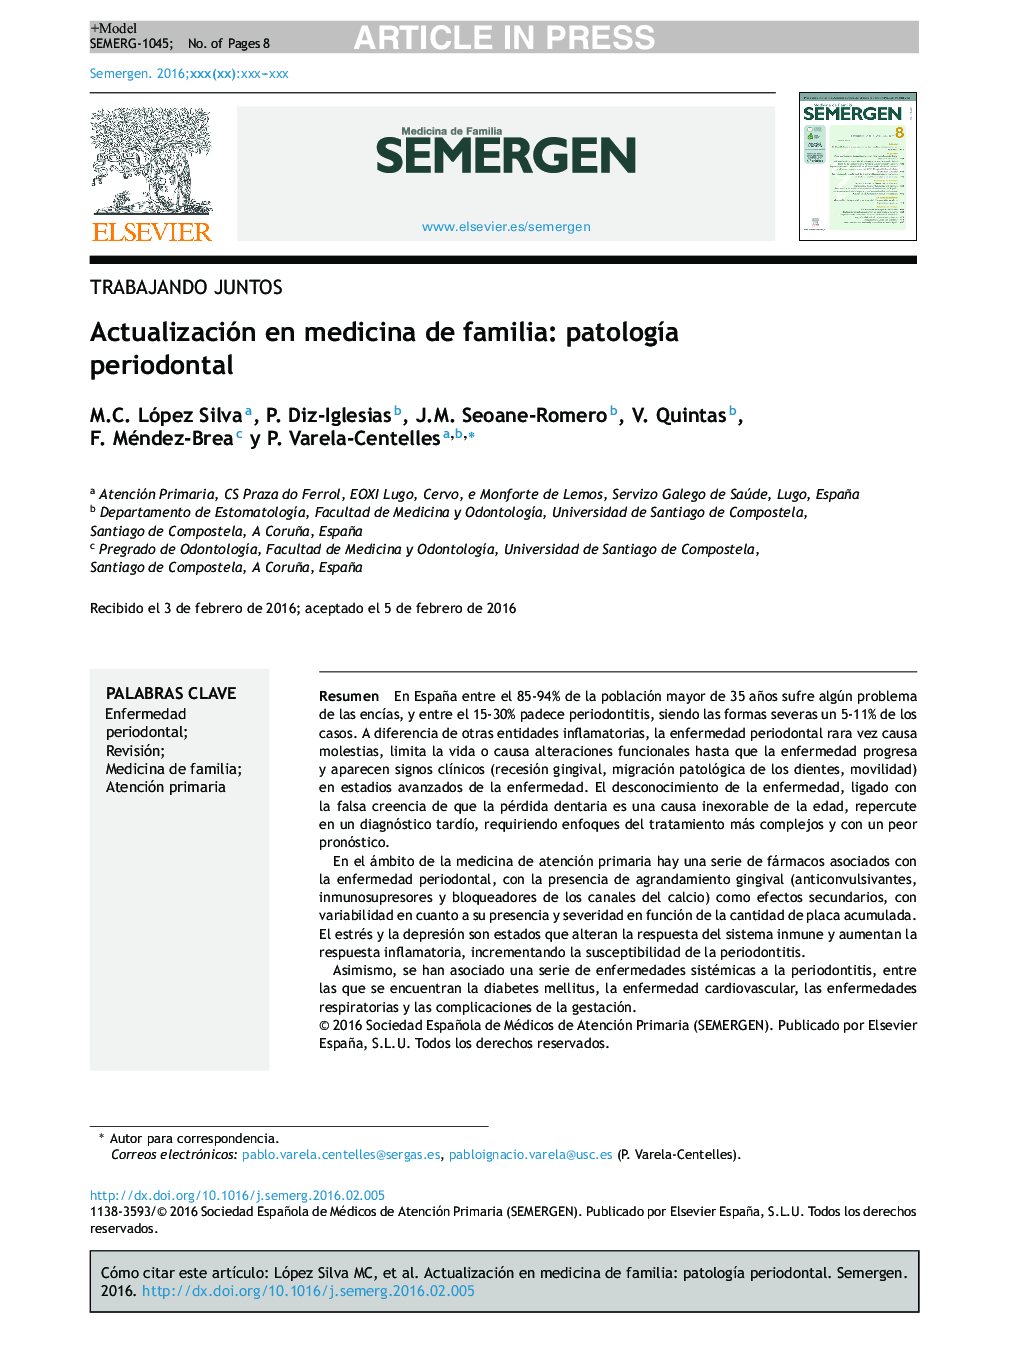 Actualización en medicina de familia: patologÃ­a periodontal